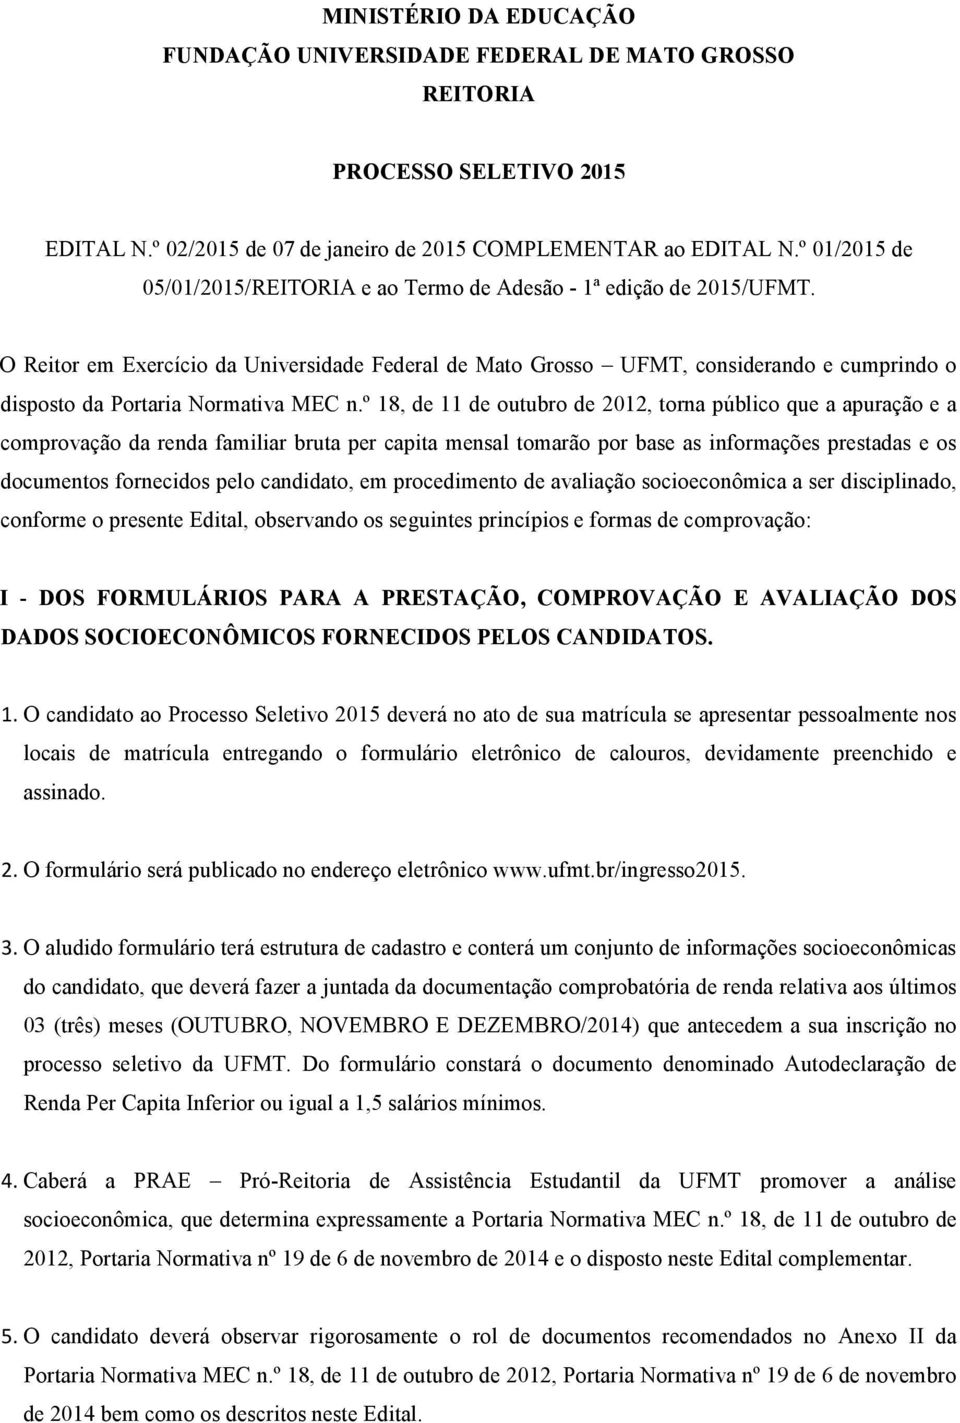 O Reitor em Exercício da Universidade Federal de Mato Grosso UFMT, considerando e cumprindo o disposto da Portaria Normativa MEC n.